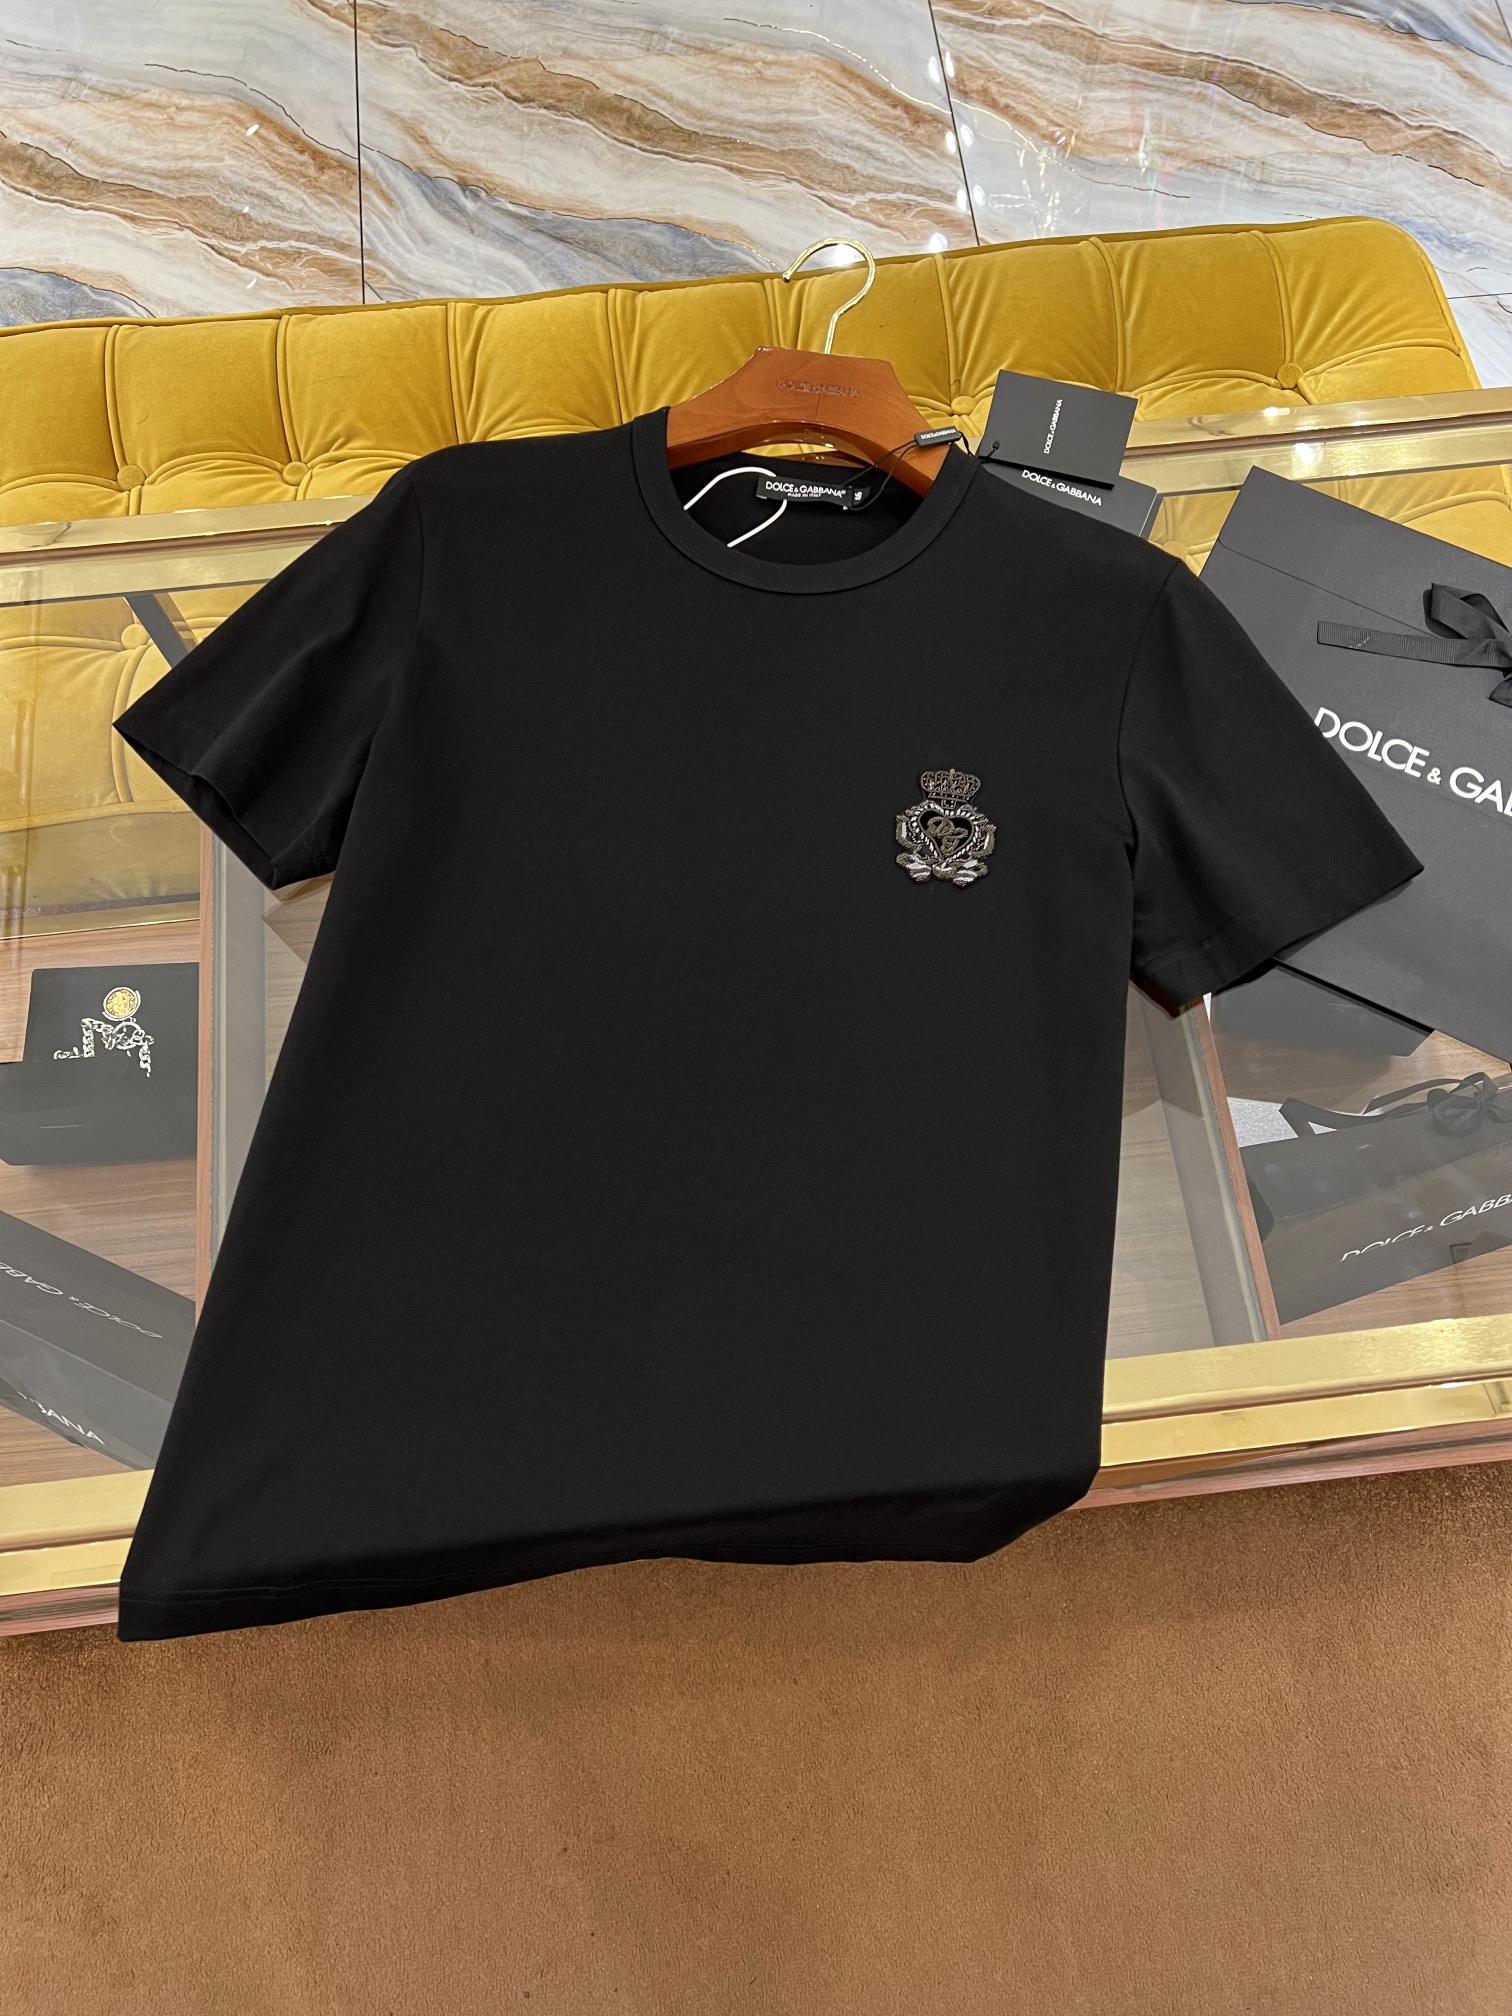 SS新款T恤顶级DG皇冠印度丝独家新面料升级经典爆款正常版型黑/白码数44-54